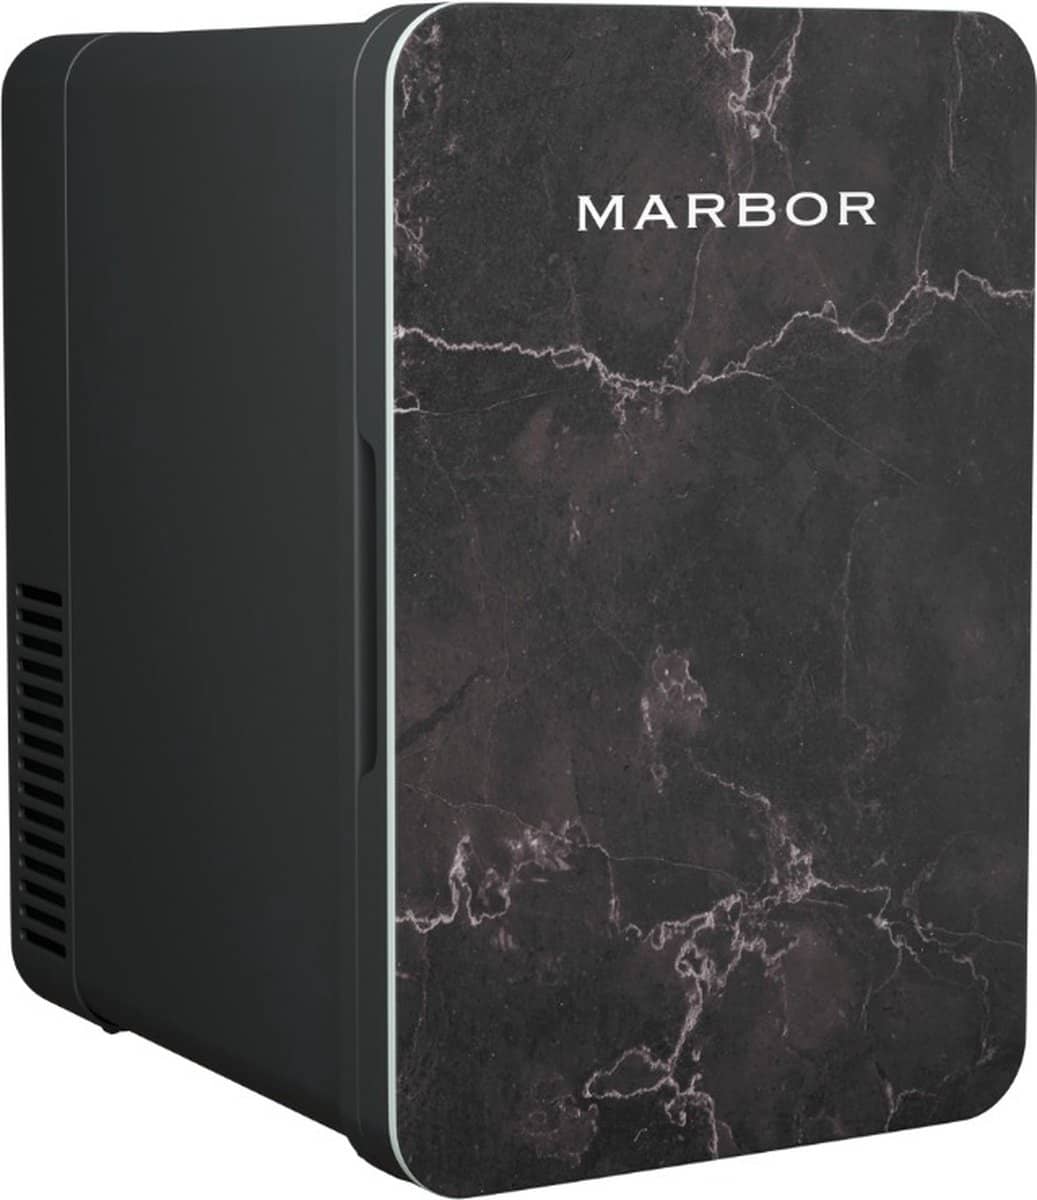 Marbor FW216 Pro Black Edition. Hotel chique design